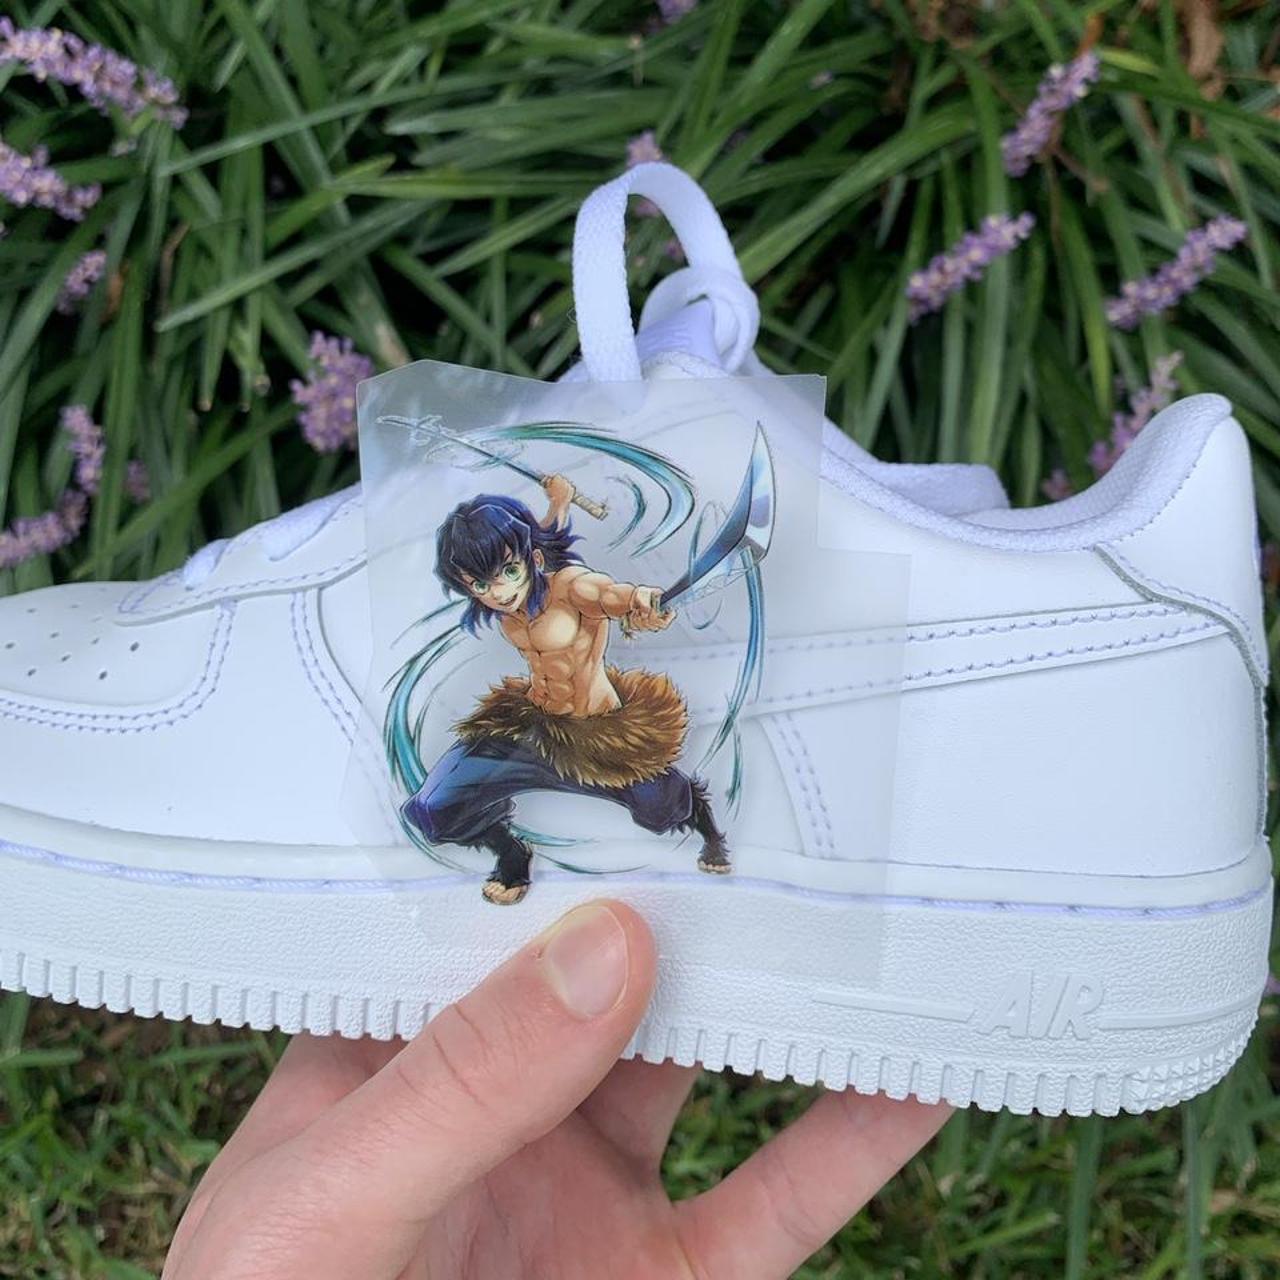 Gear Anime | The Art Of Custom Anime Shoes - Gear Anime